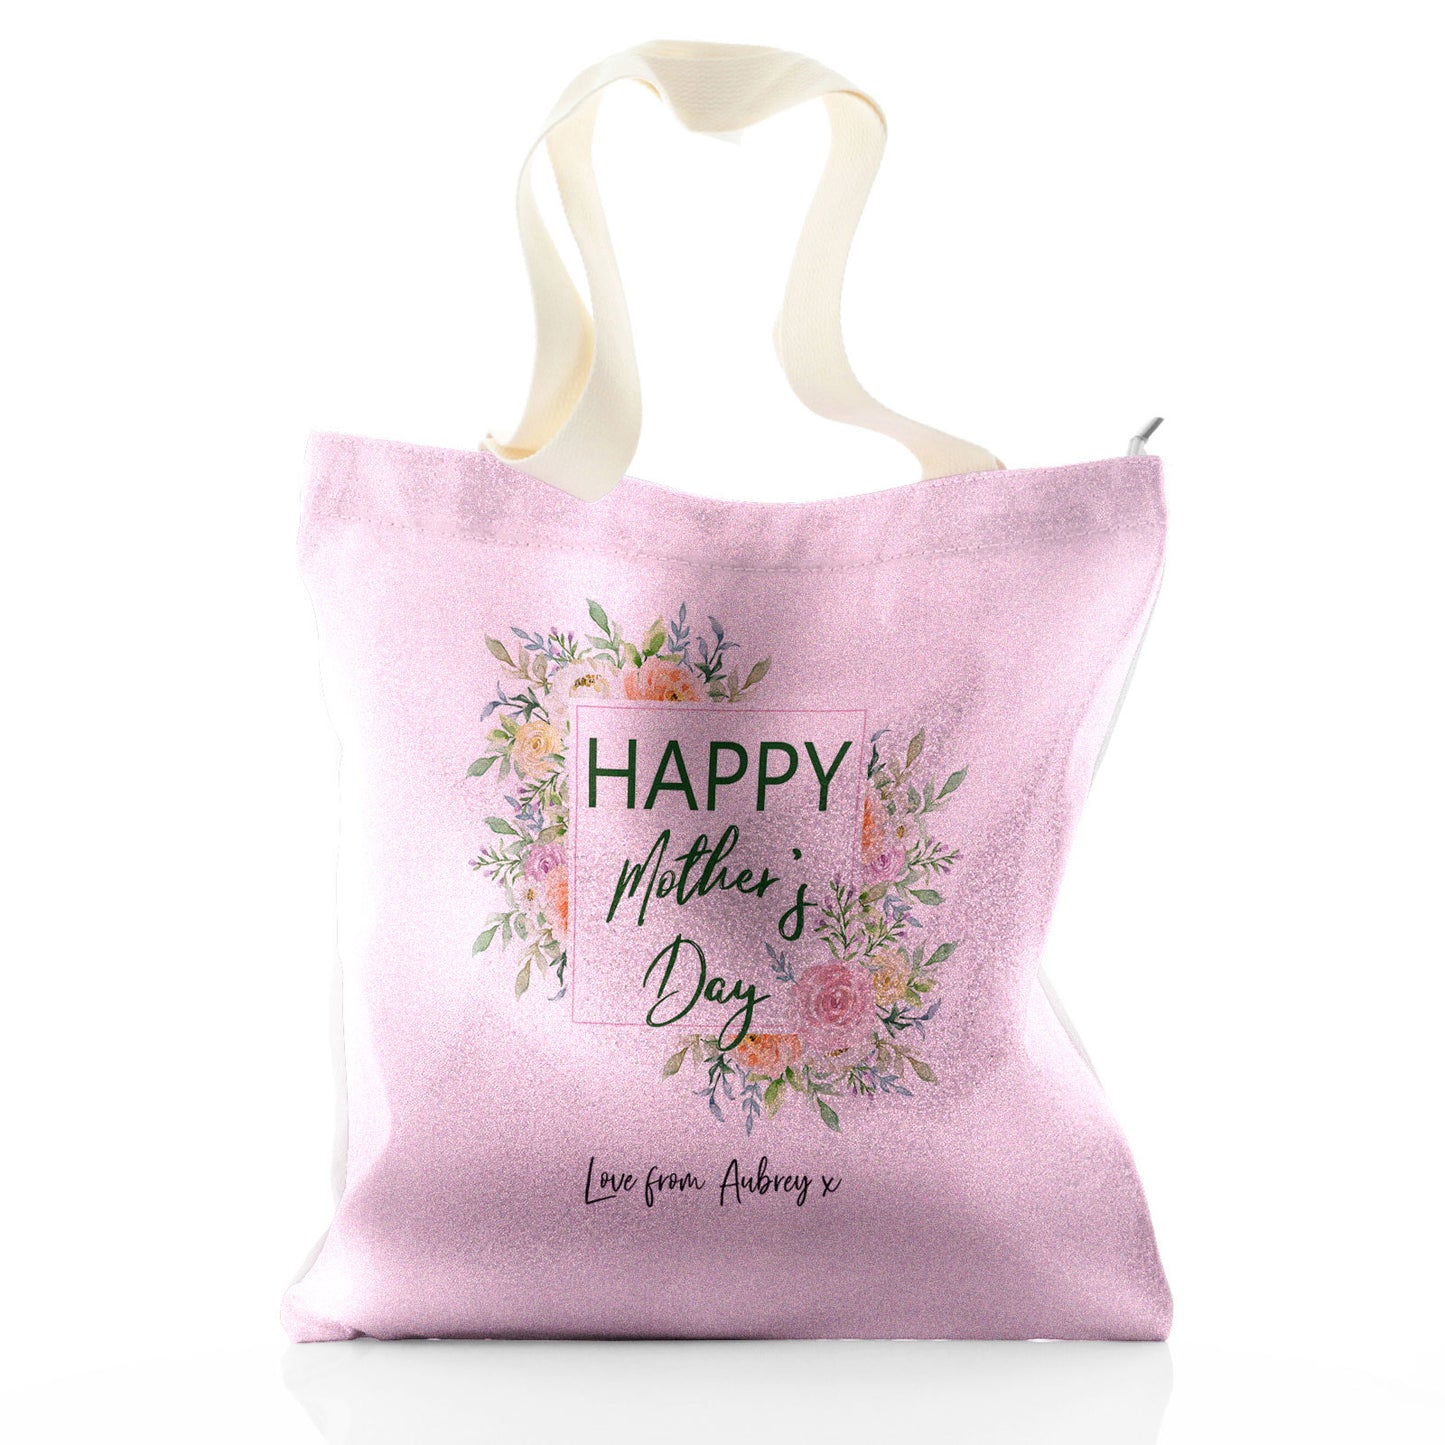 Personalisierte Glitzer-Einkaufstasche mit stilvollem Text und floraler Muttertagsbotschaft